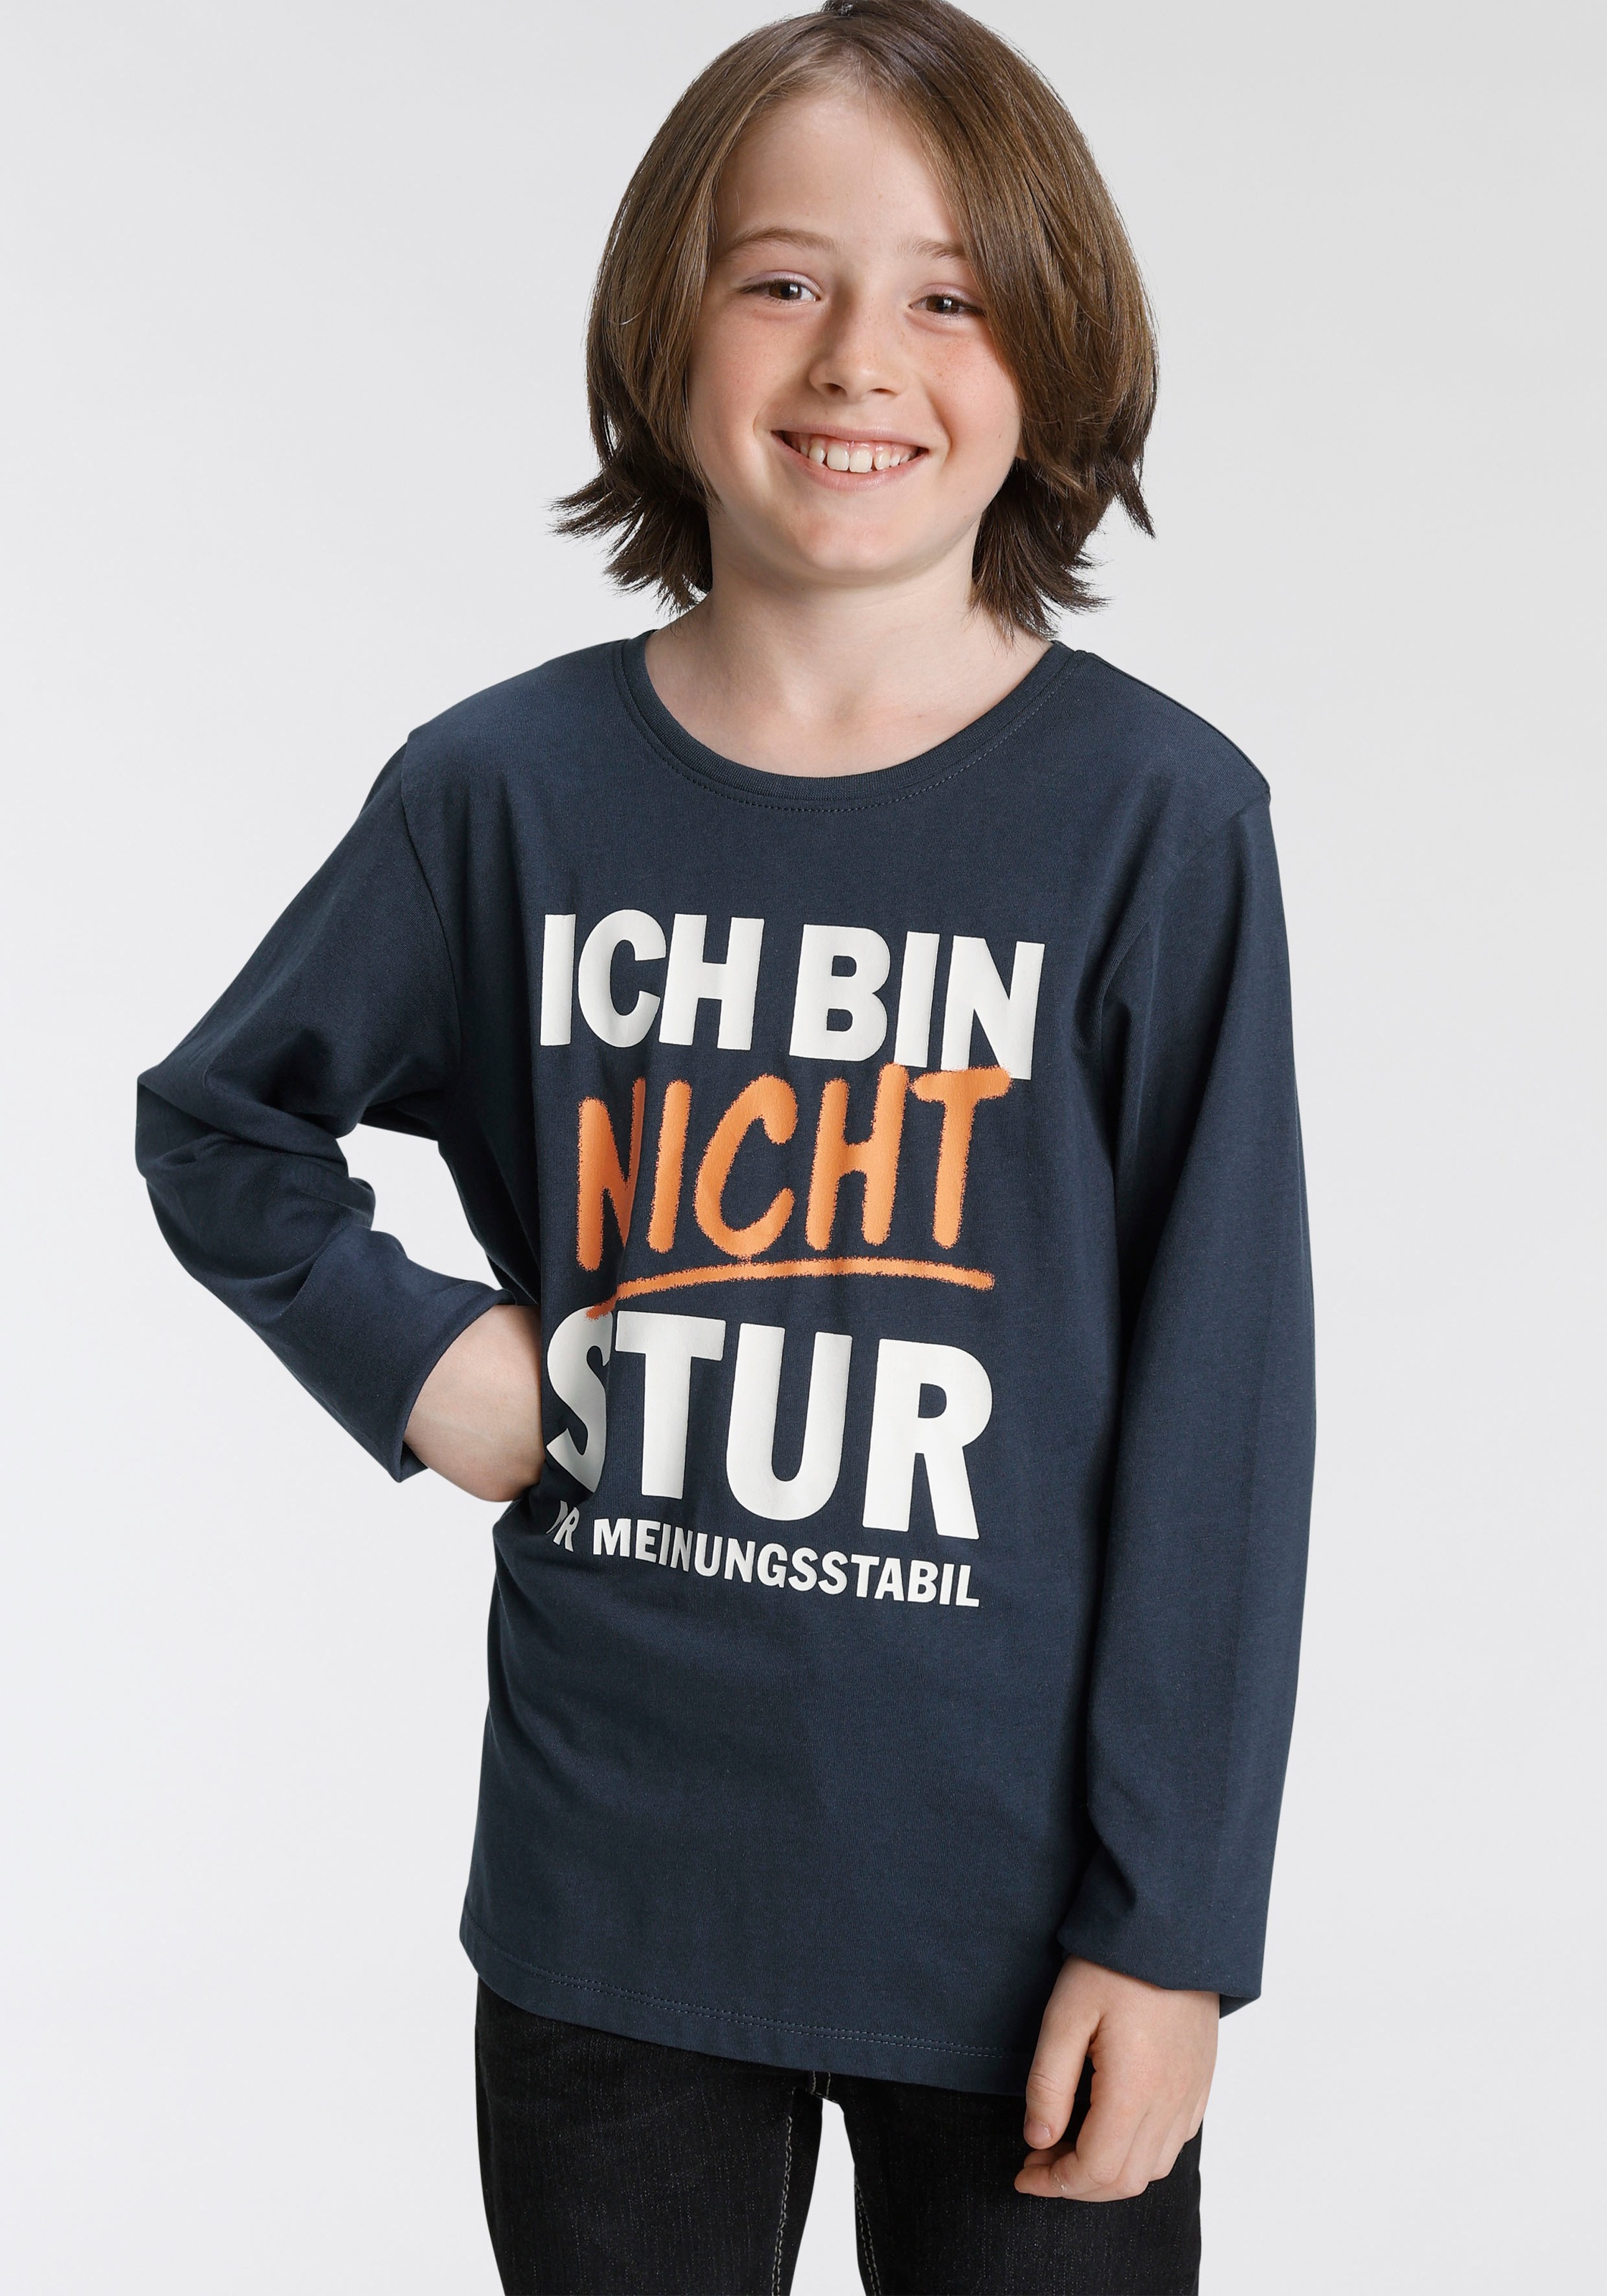 Online »KLEIN+FRECH+SCHLAU...« im KIDSWORLD OTTO T-Shirt Shop